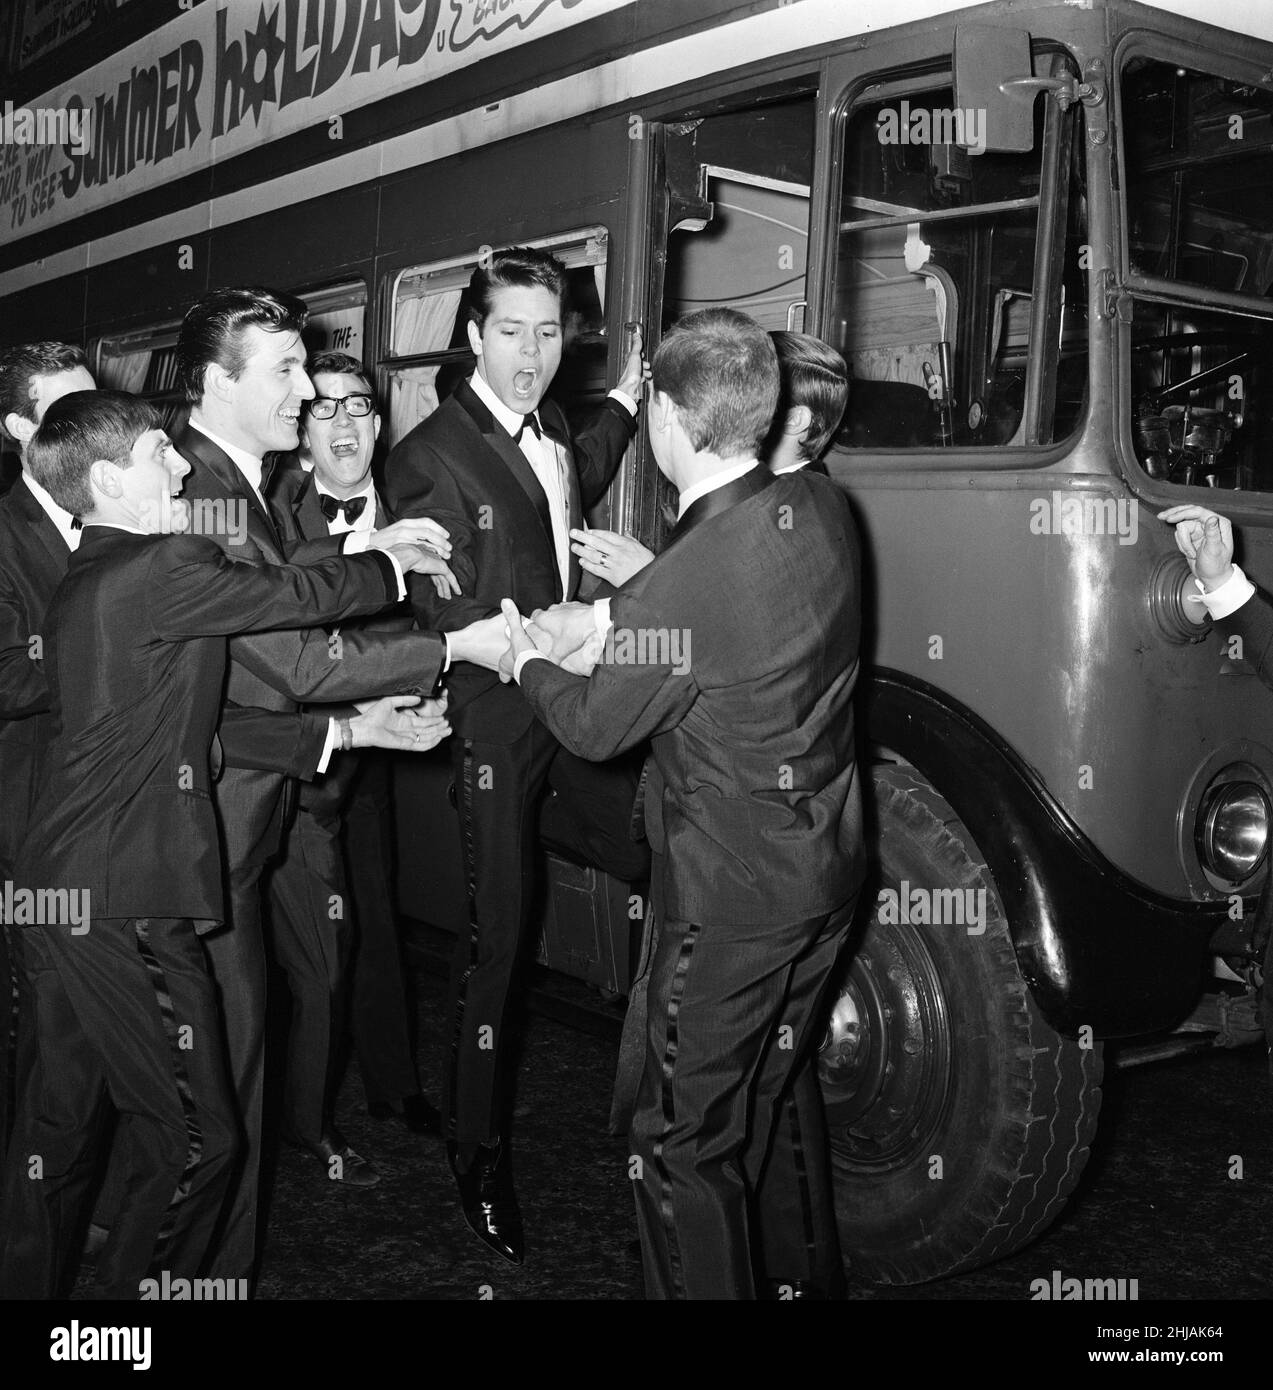 Cliff Richard y algunas de las sombras con un autobús de transporte de Londres. El elenco de la película había planeado llegar al estreno de la película, 'Vacaciones de verano' en el autobús. A Cliff Richard se le impidió asistir al premier debido a los aficionados que se agolpaban alrededor de su coche cuando entró en Leicester Square. 10th de enero de 1963. Foto de stock